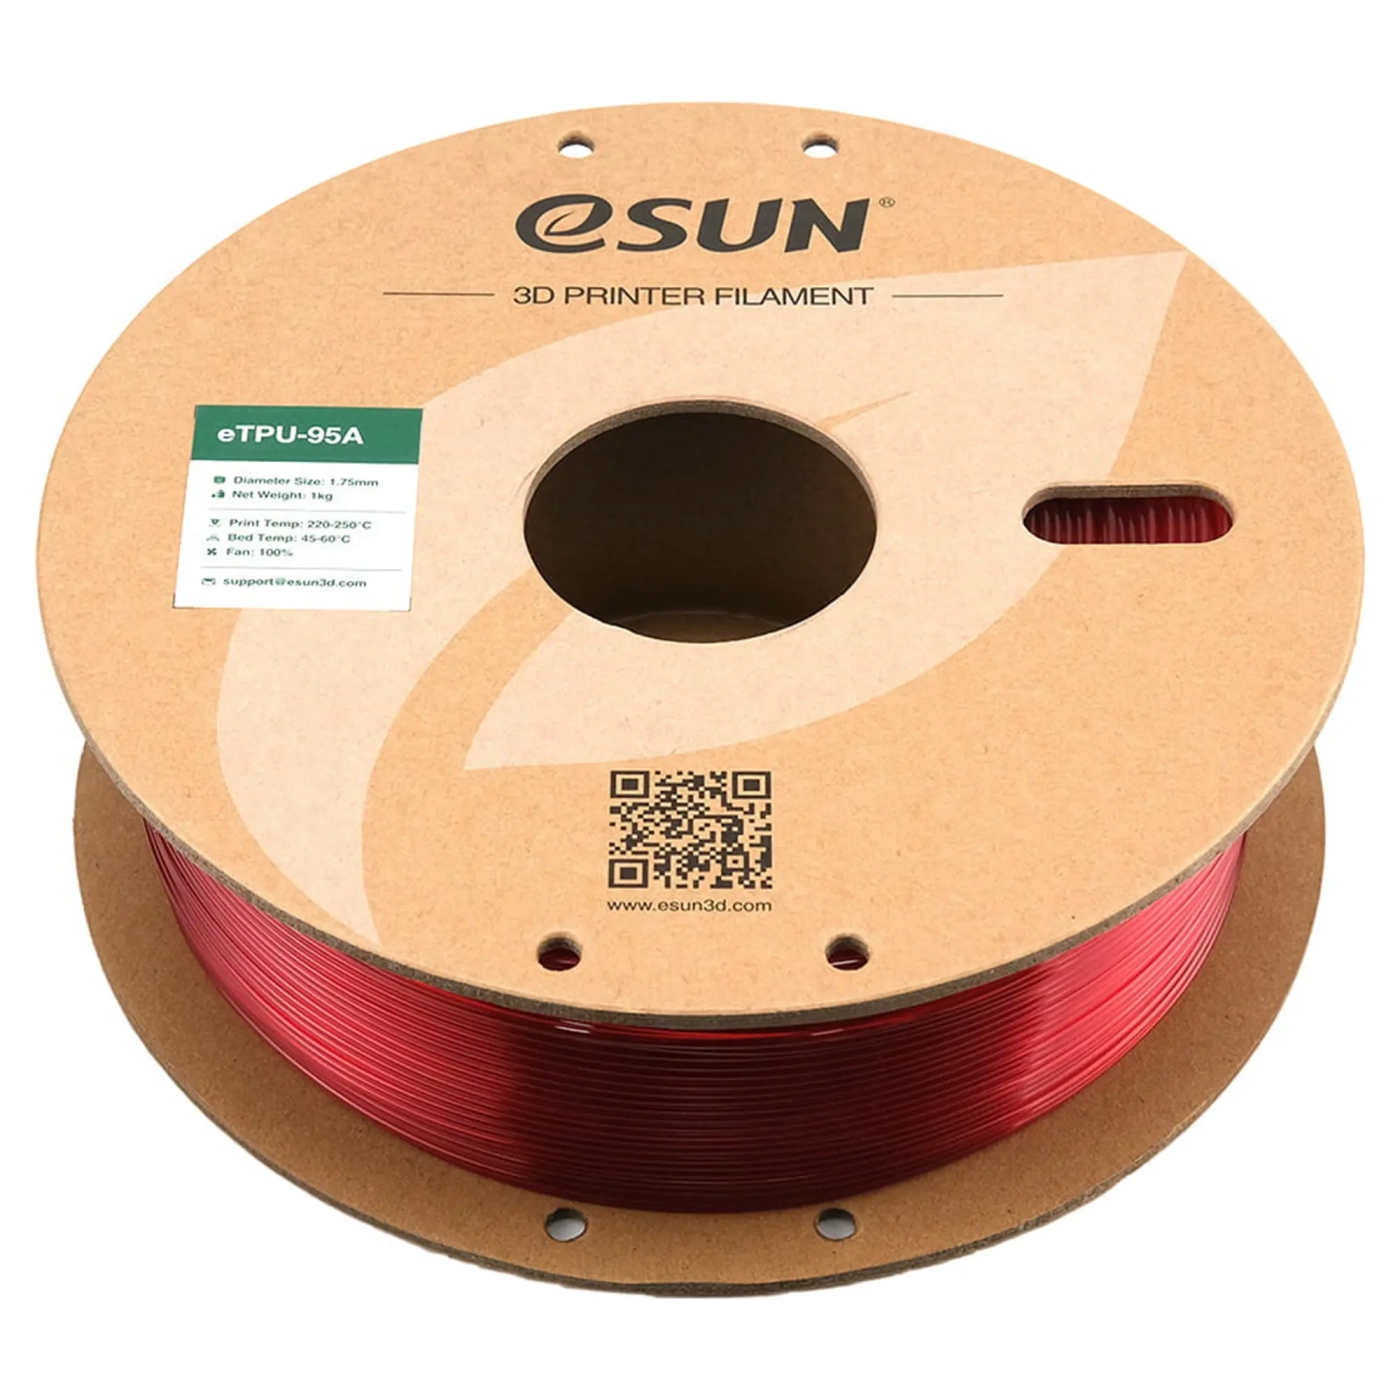 Купить eTPU-95A Filament (пластик) для 3D принтера eSUN 1кг, 1.75мм, прозрачный красный (ETPU-95A175GR1) - фото 2